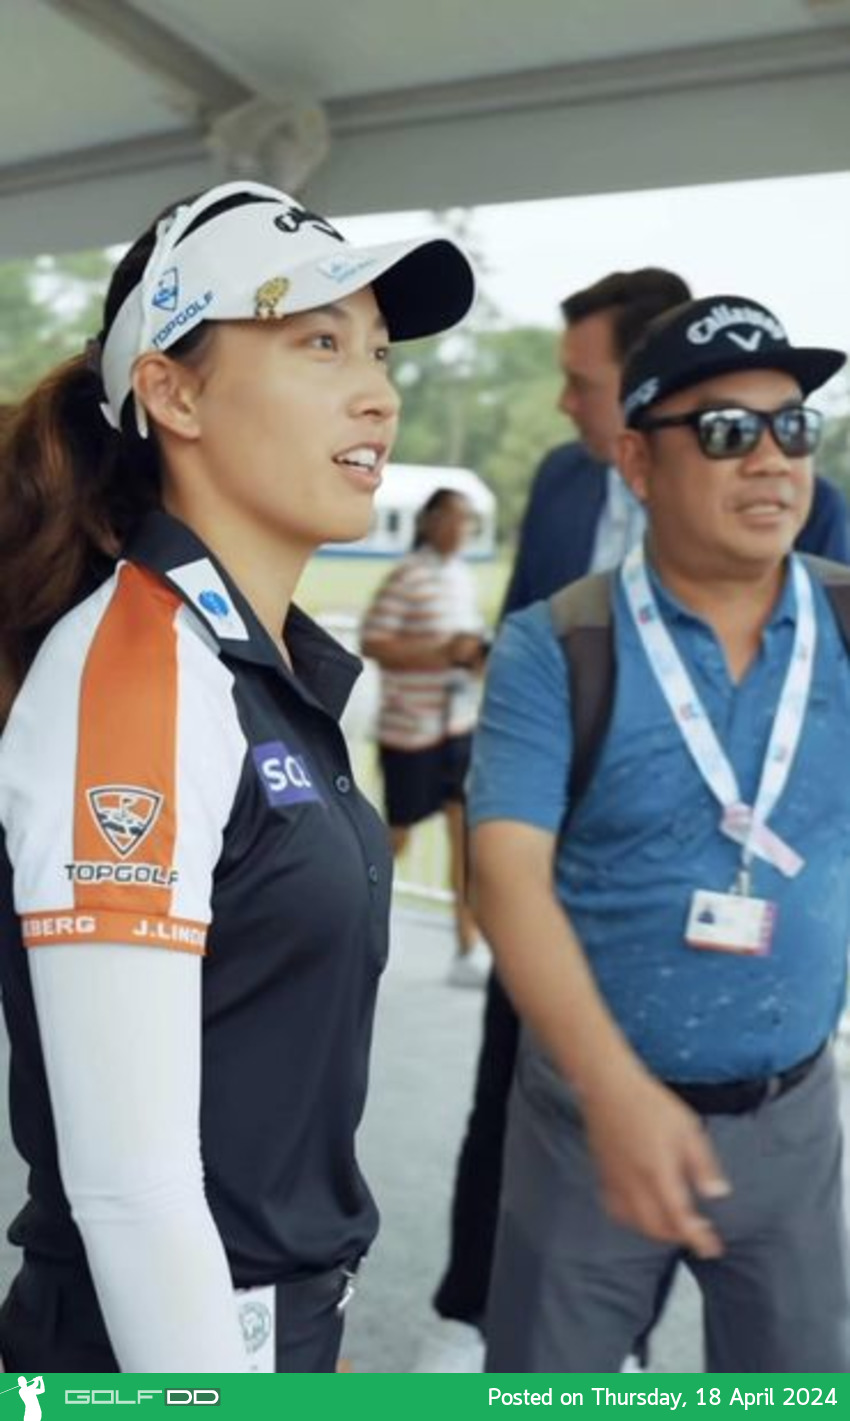 โปรจีน พูดถึงการแข่ง วันแรกหลังคัมแบคกลับมาลงเล่น LPGA Tour 2024 รายการ “เชฟรอน แชมเปี้ยนชิพ” 